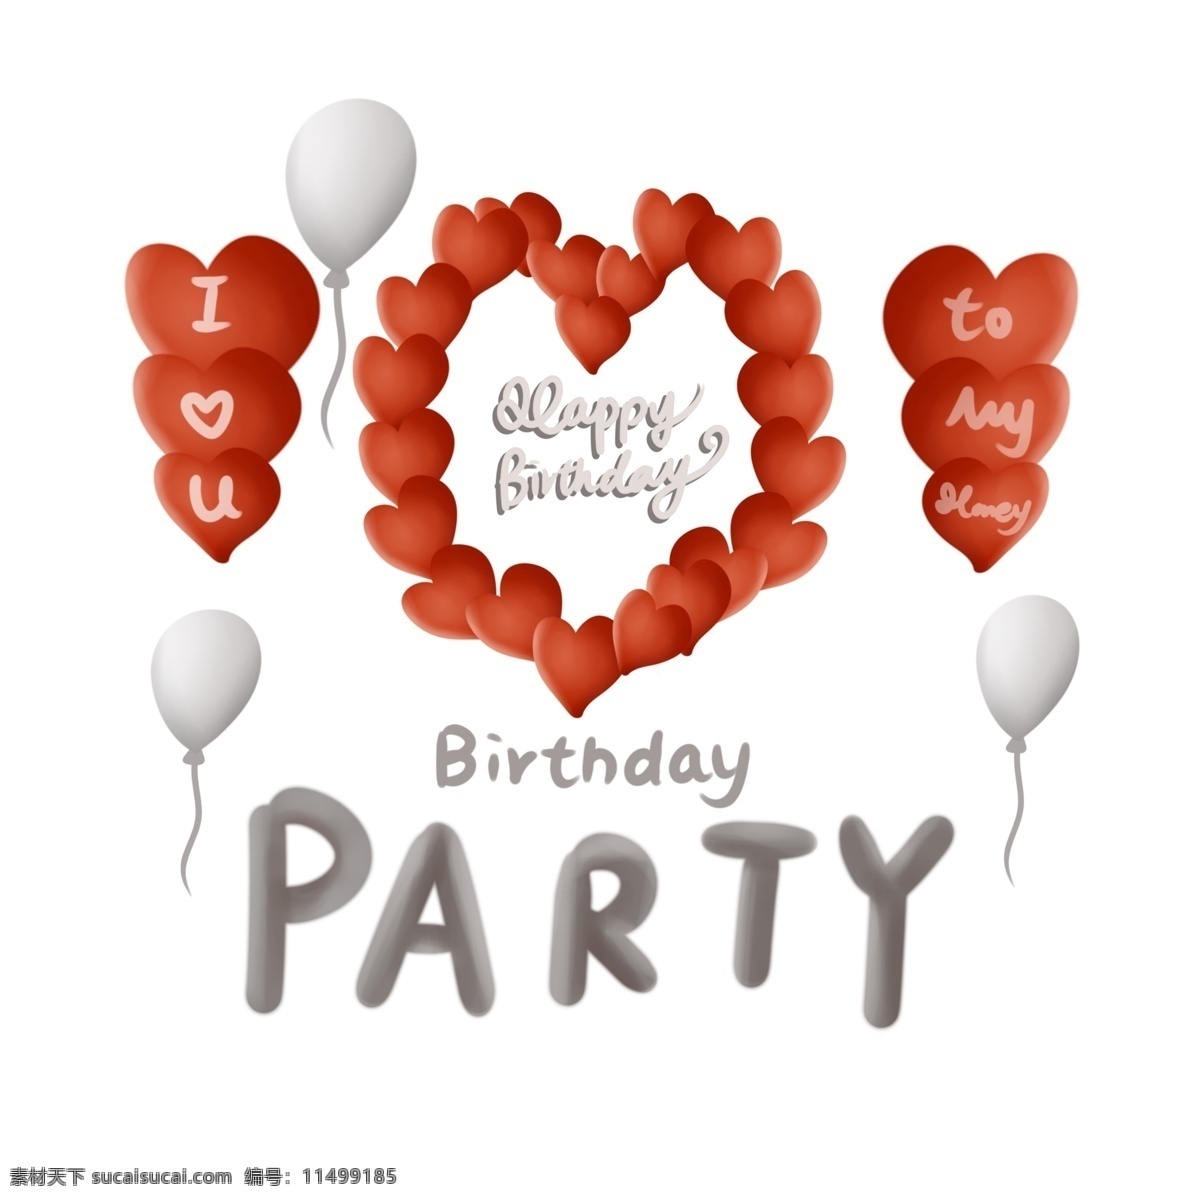 生日 派对 邀请函 装饰 红色 爱心 气球 送女朋友 生日派对 生日装饰 爱情 甜蜜 字母